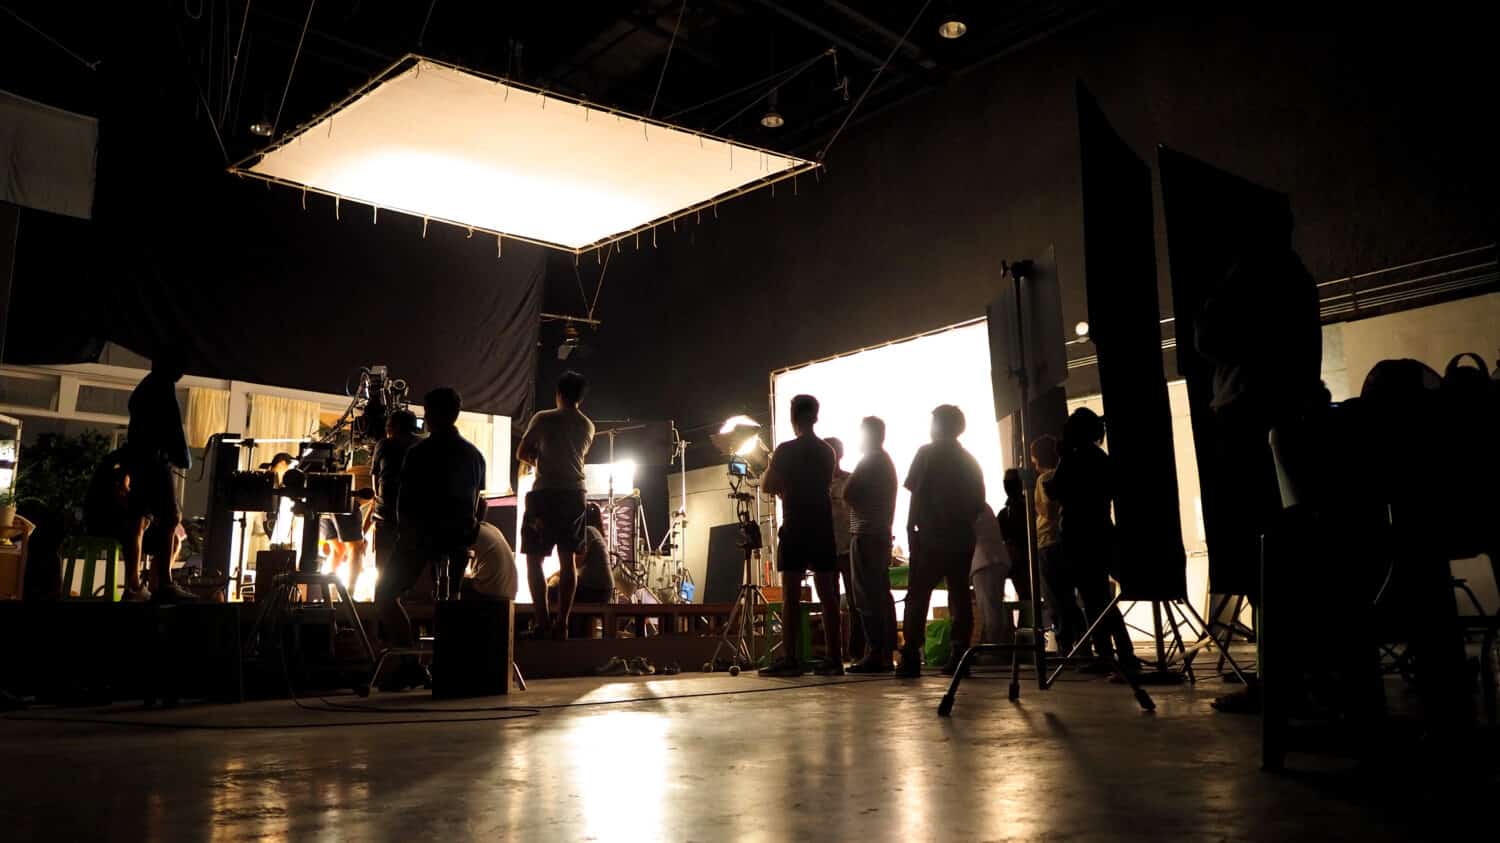 Dietro le quinte della troupe di produzione di riprese video silhouette del team e attrezzatura fotografica in studio. 